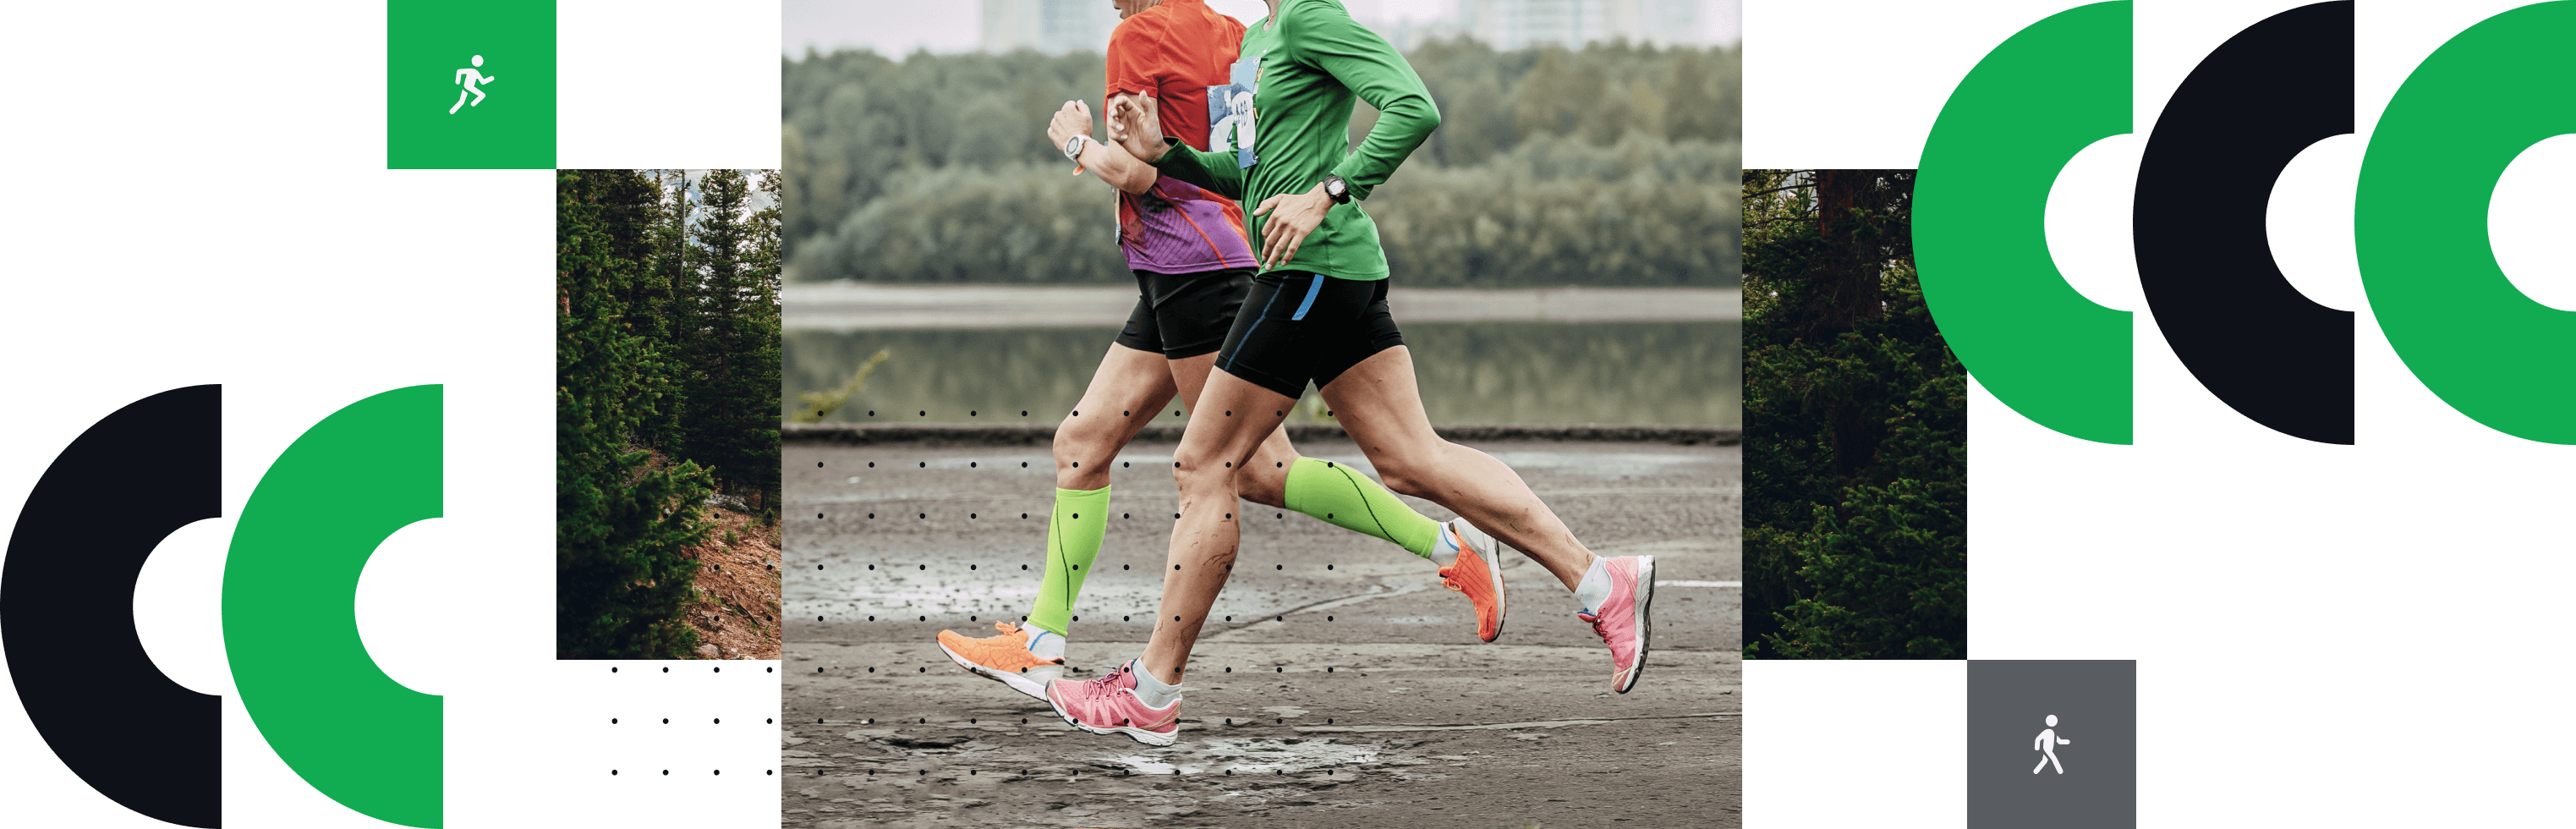 dos personas corriendo un maratón